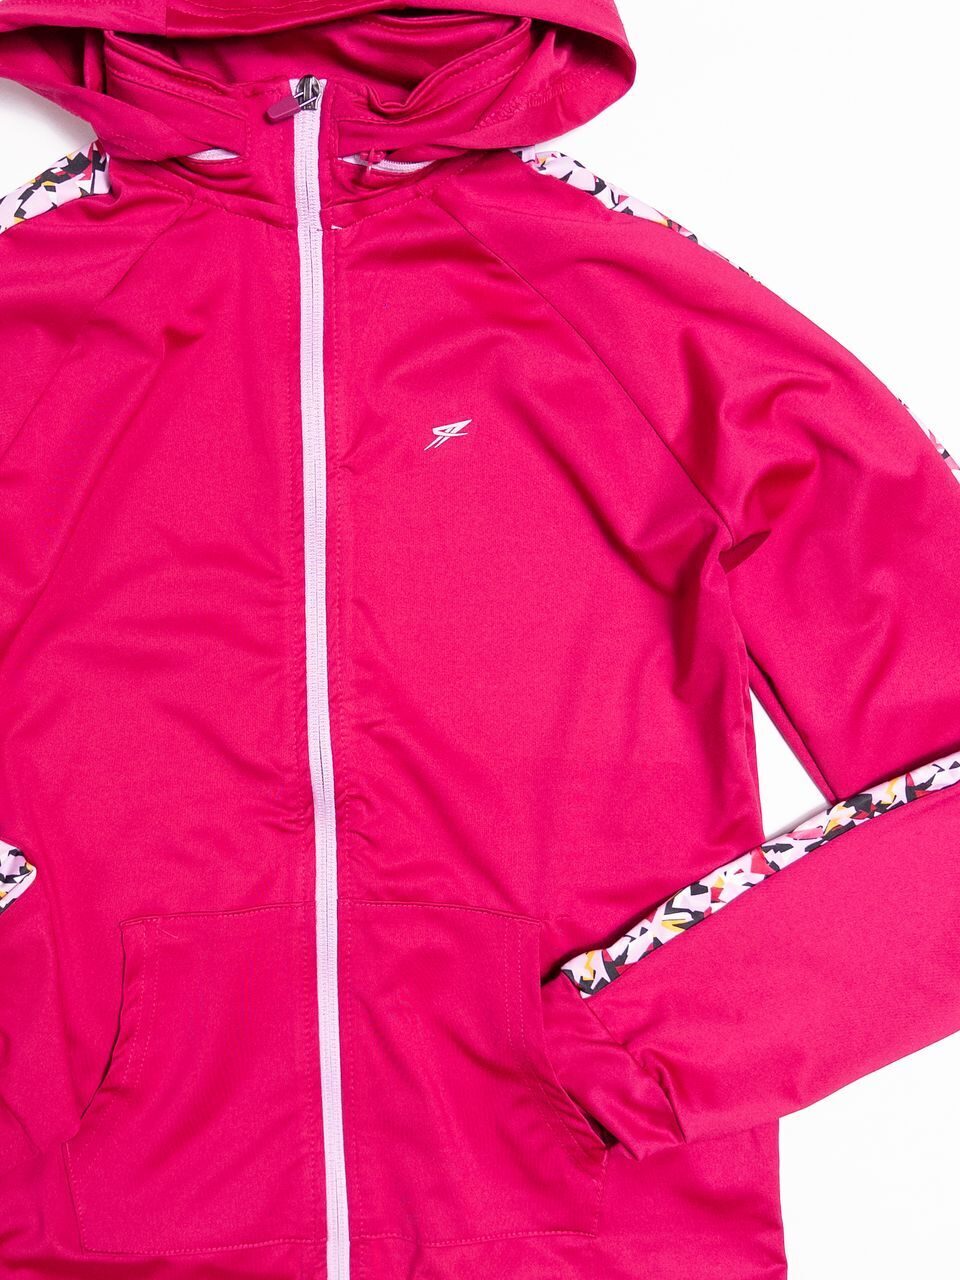 Толстовка спортивная для девочки со скрытым капюшоном, рукав реглан цвет розовый/узор на рост 158 см Primark